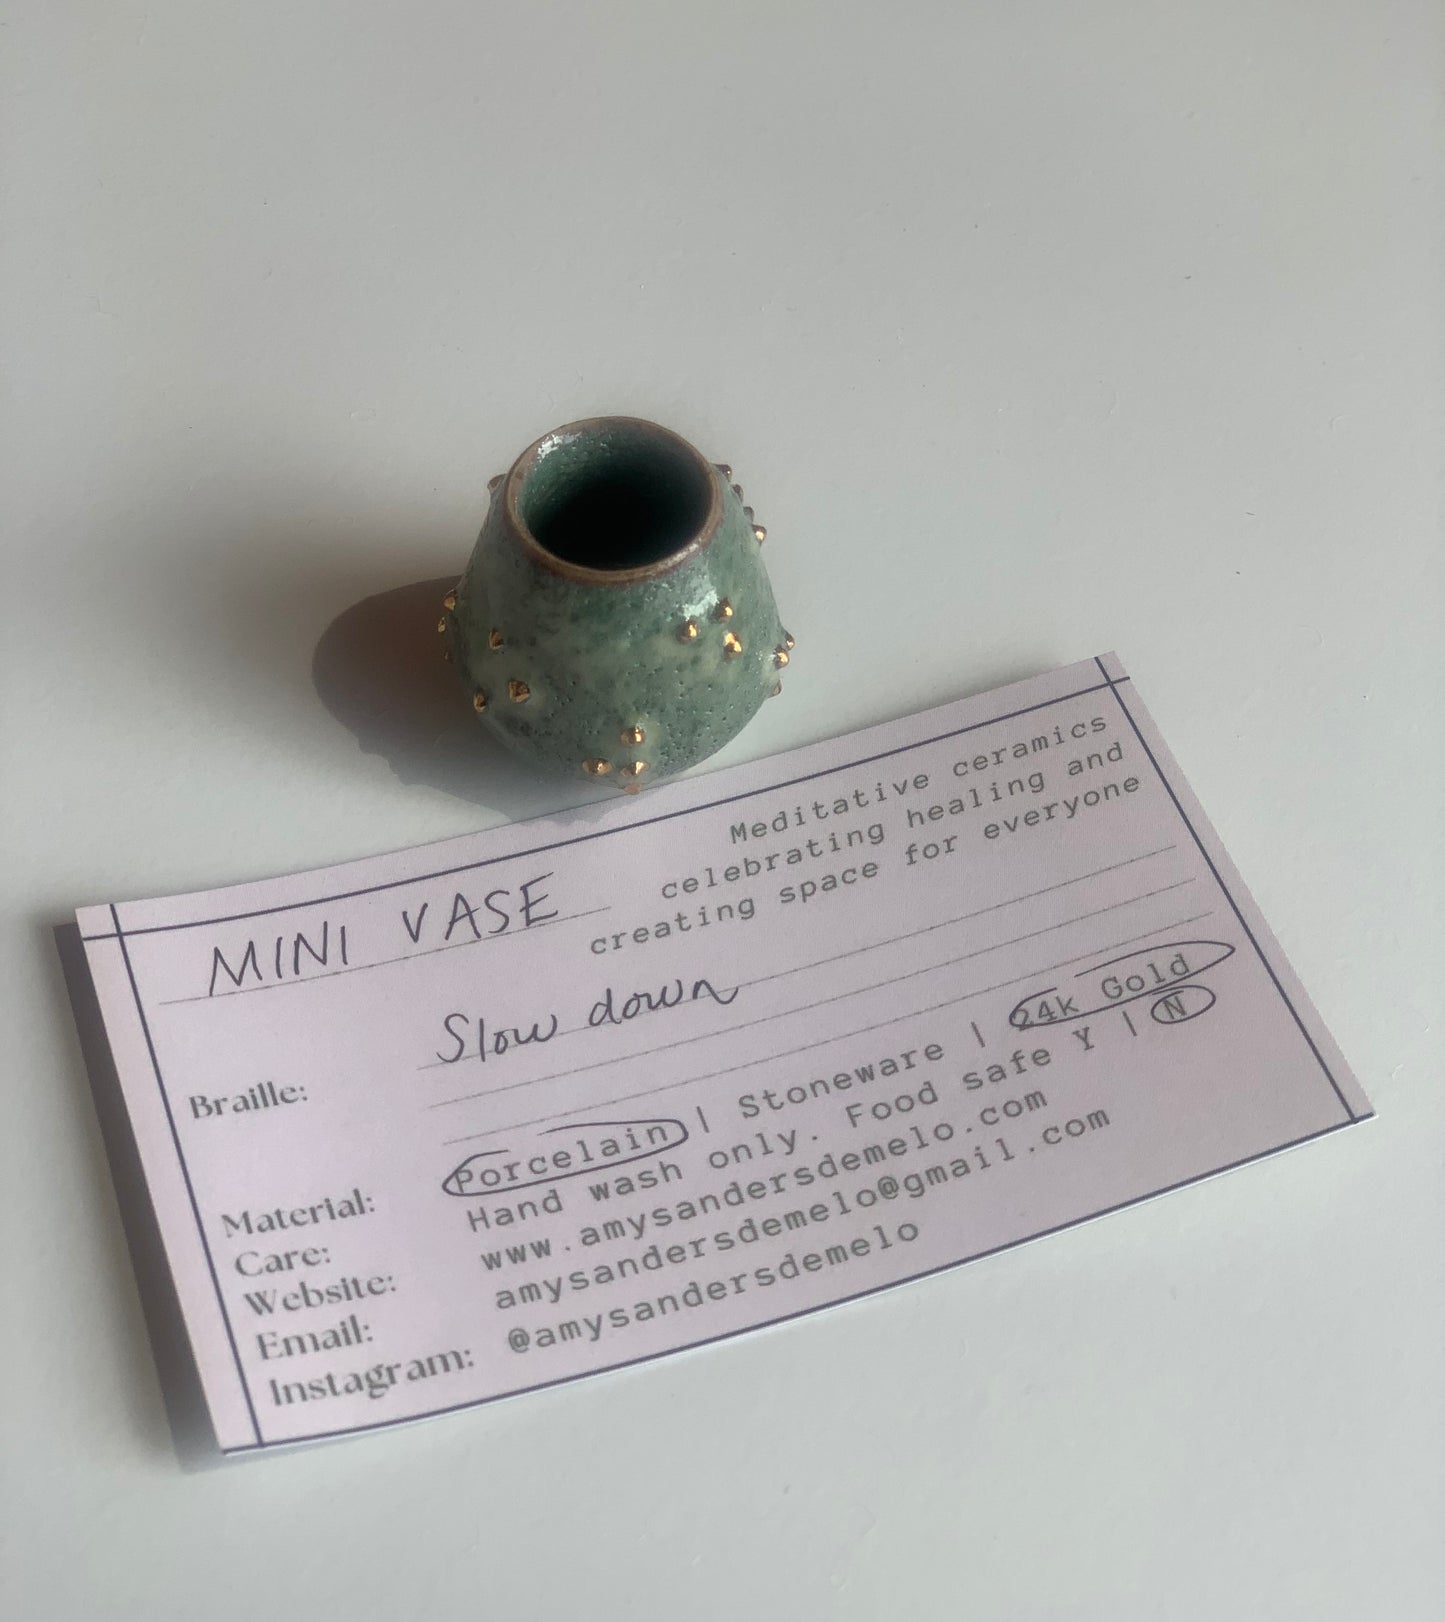 Miniature Meditation Vase "Slow Down" | Amy Sanders de Melo